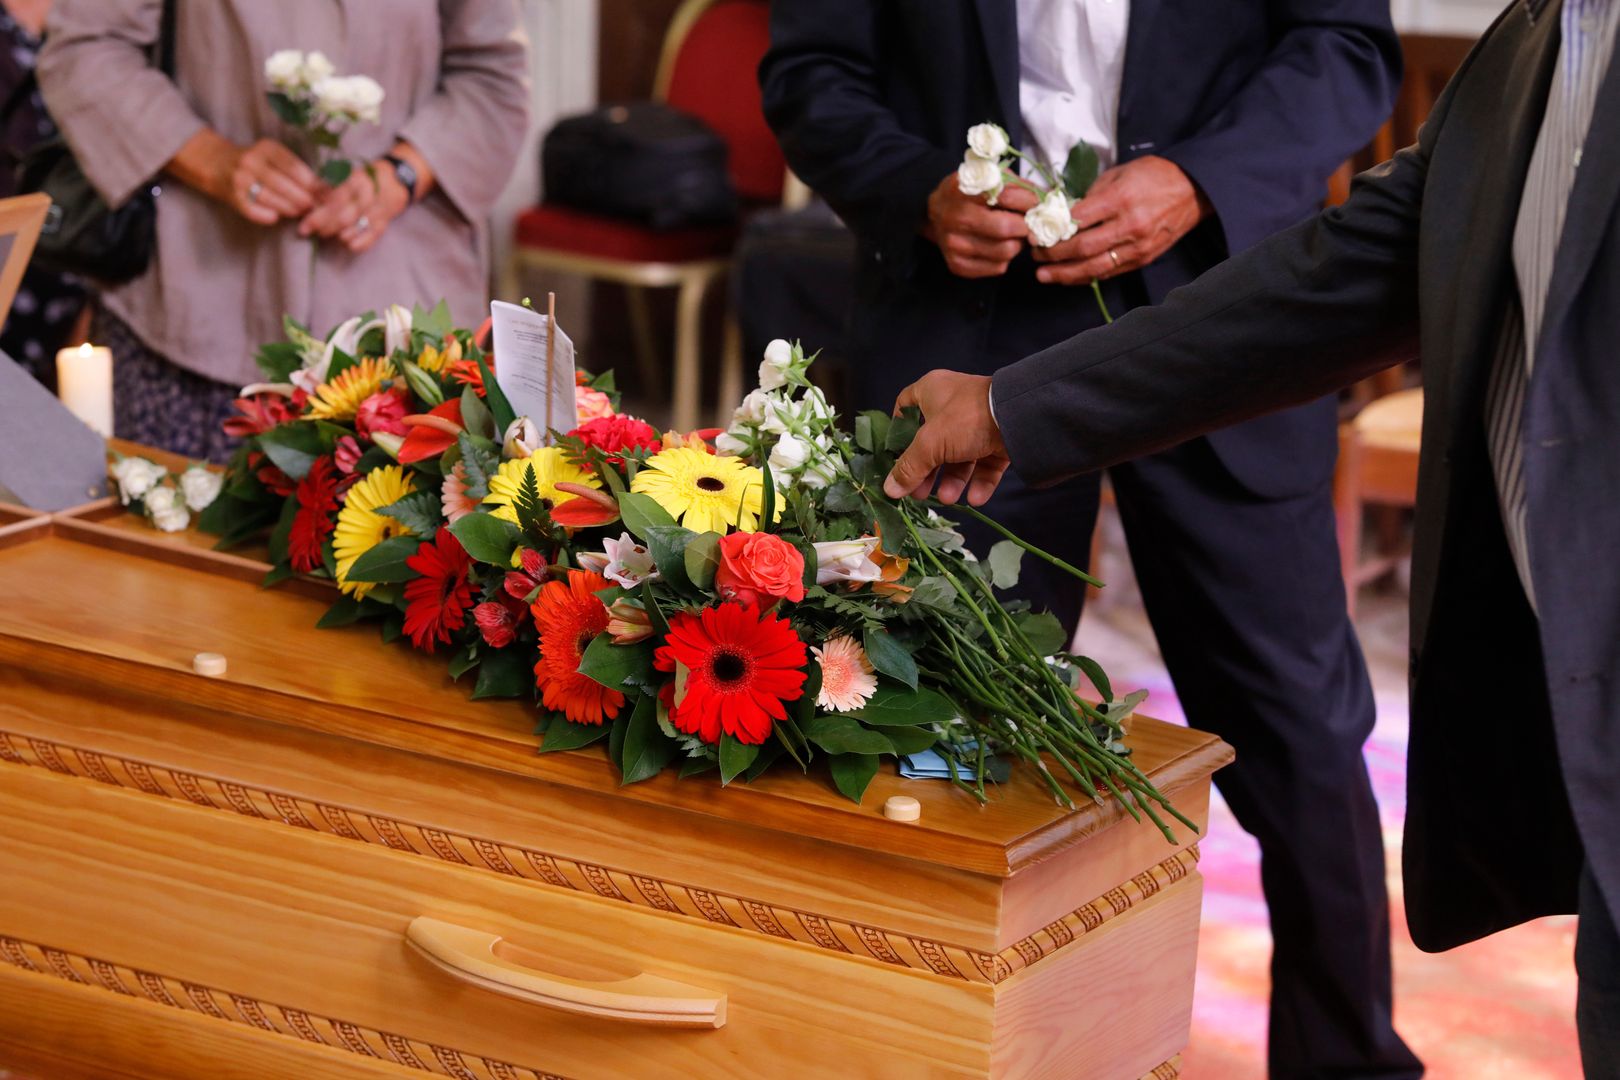 Zasiłek pogrzebowy dwukrotnie wyższy niż obecnie? Ministerstwo odpowiada